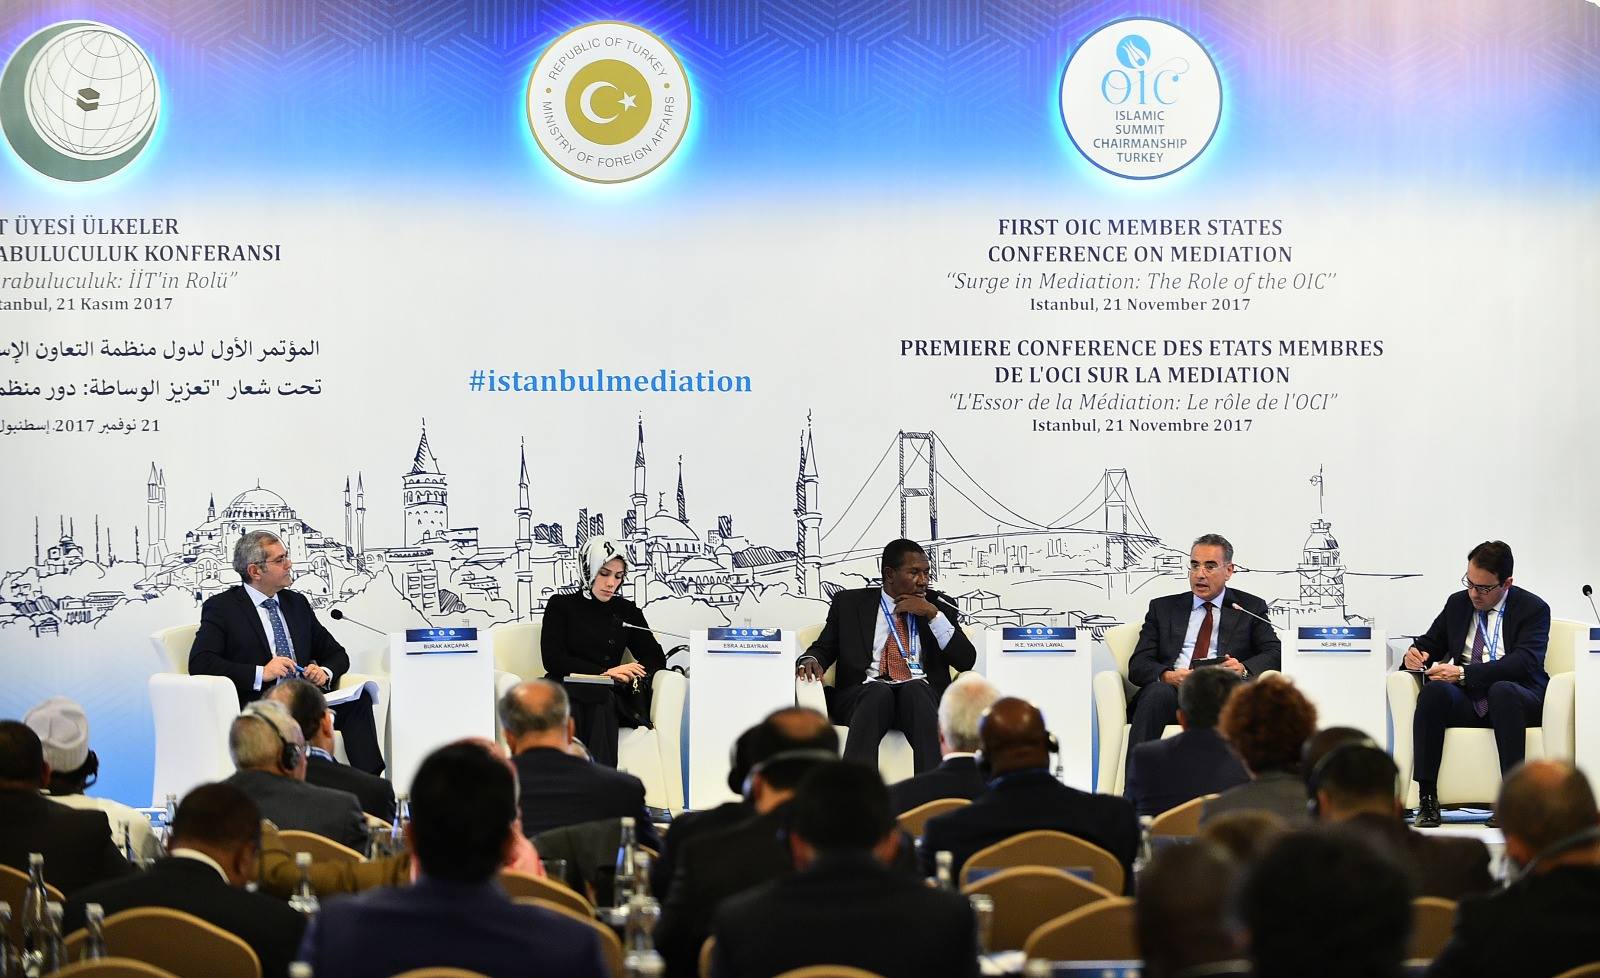 Publireportage: La Turquie acceuille la première conférence des Ministres de l’OCI sur la Médiation